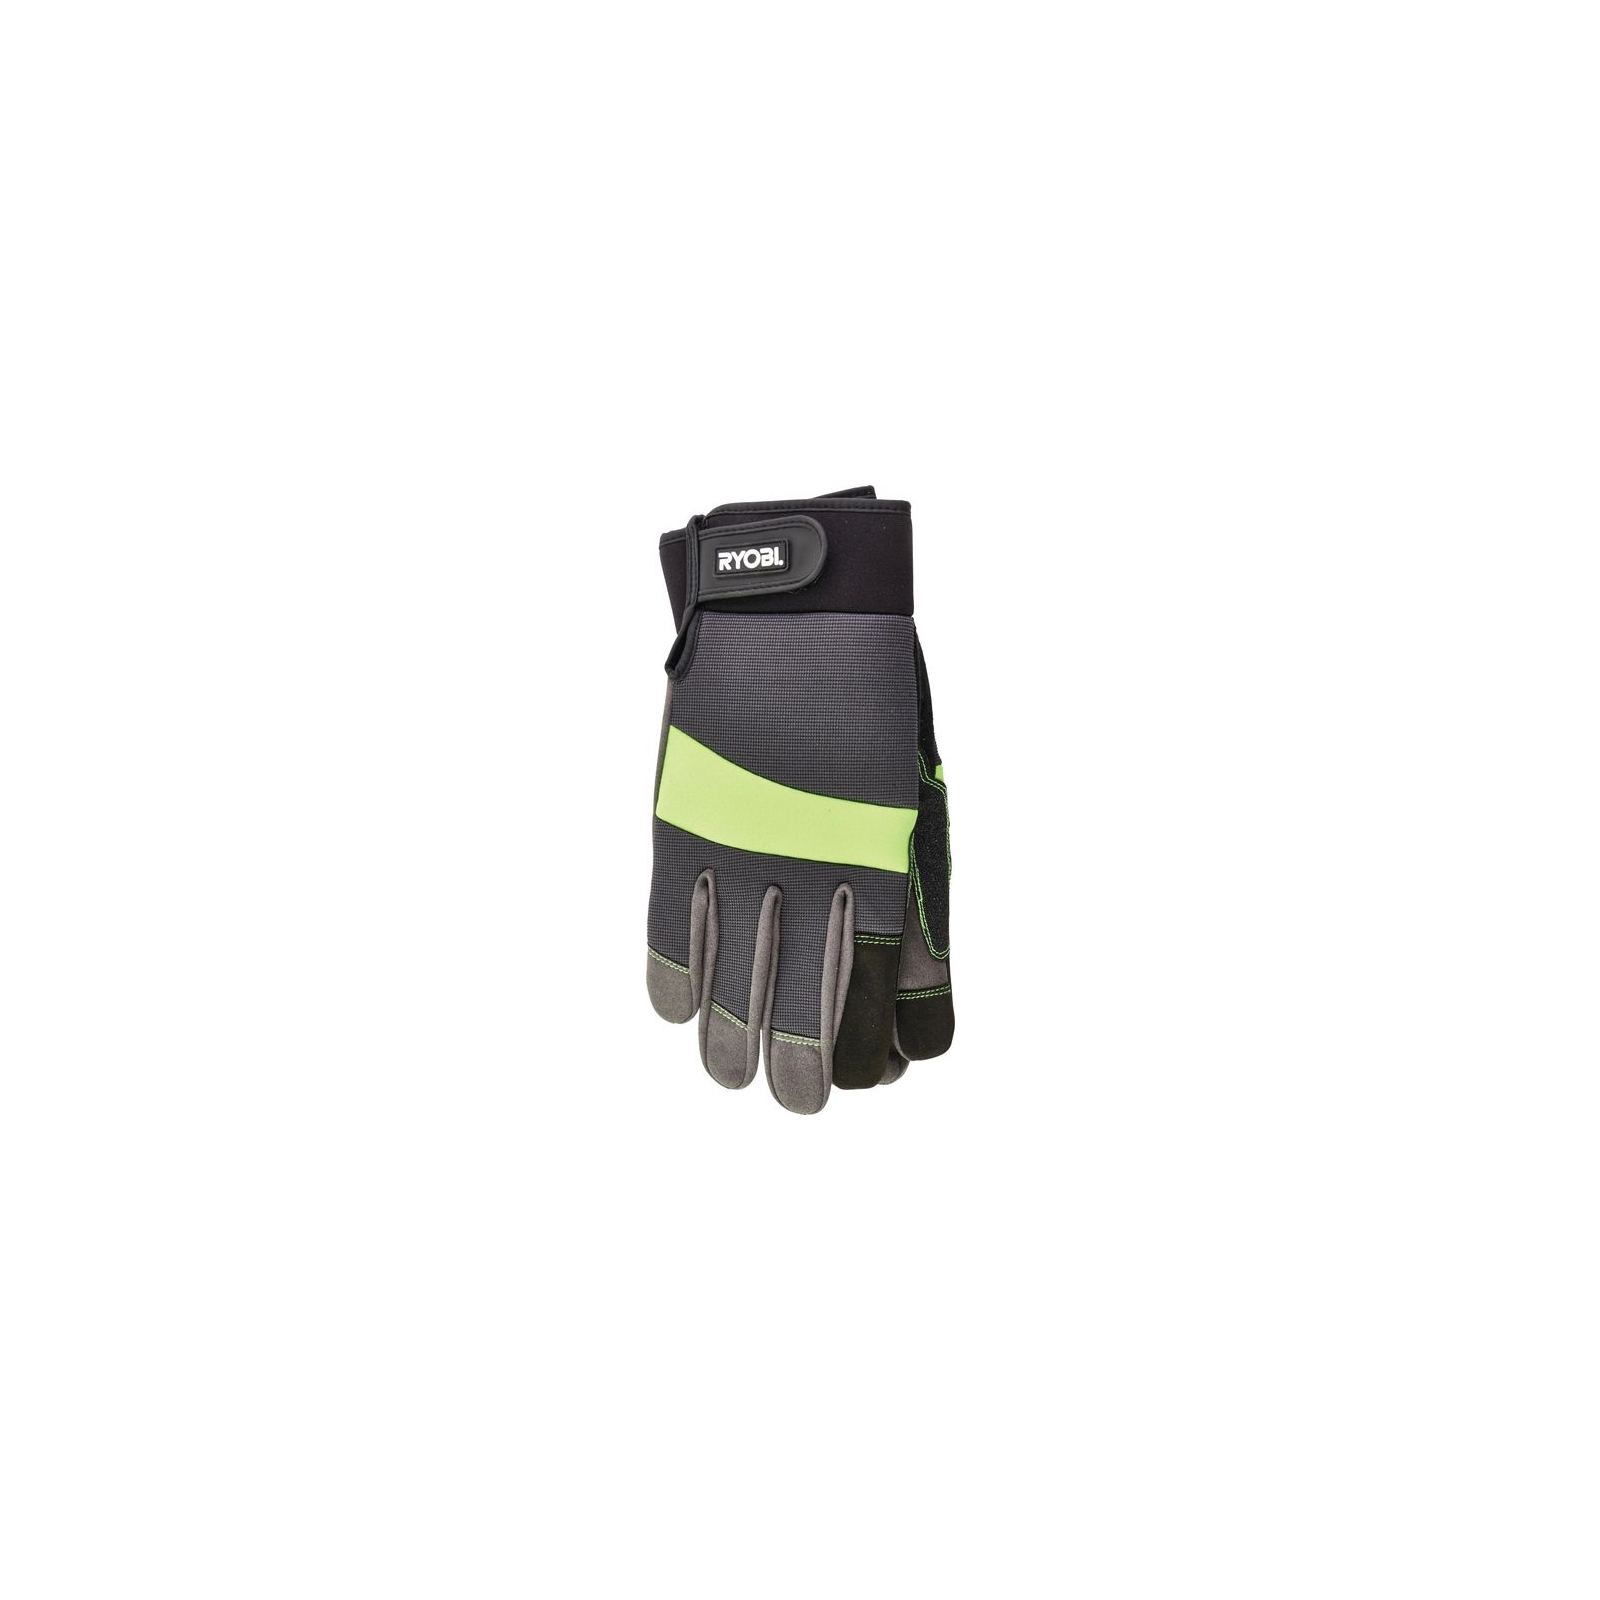 Защитные перчатки Ryobi RAC811M, влагозащита, р. М (5132002992) изображение 2